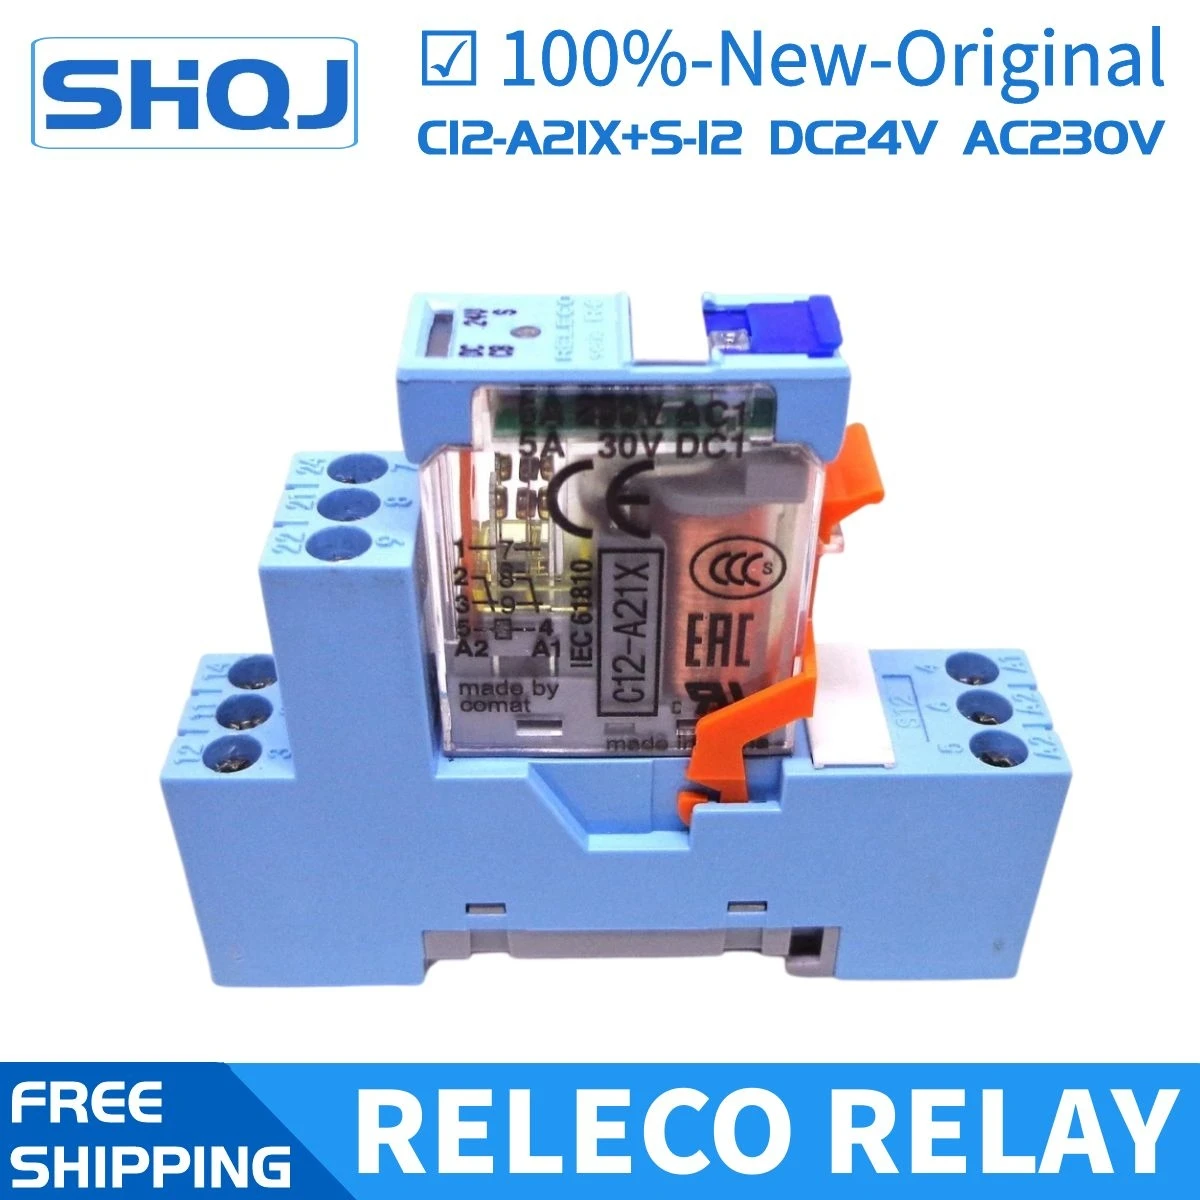 

1PCS RELECO RELAY C12-A21X+S12 DC24V AC230V 2CO 5A relay+base 100%-new-original